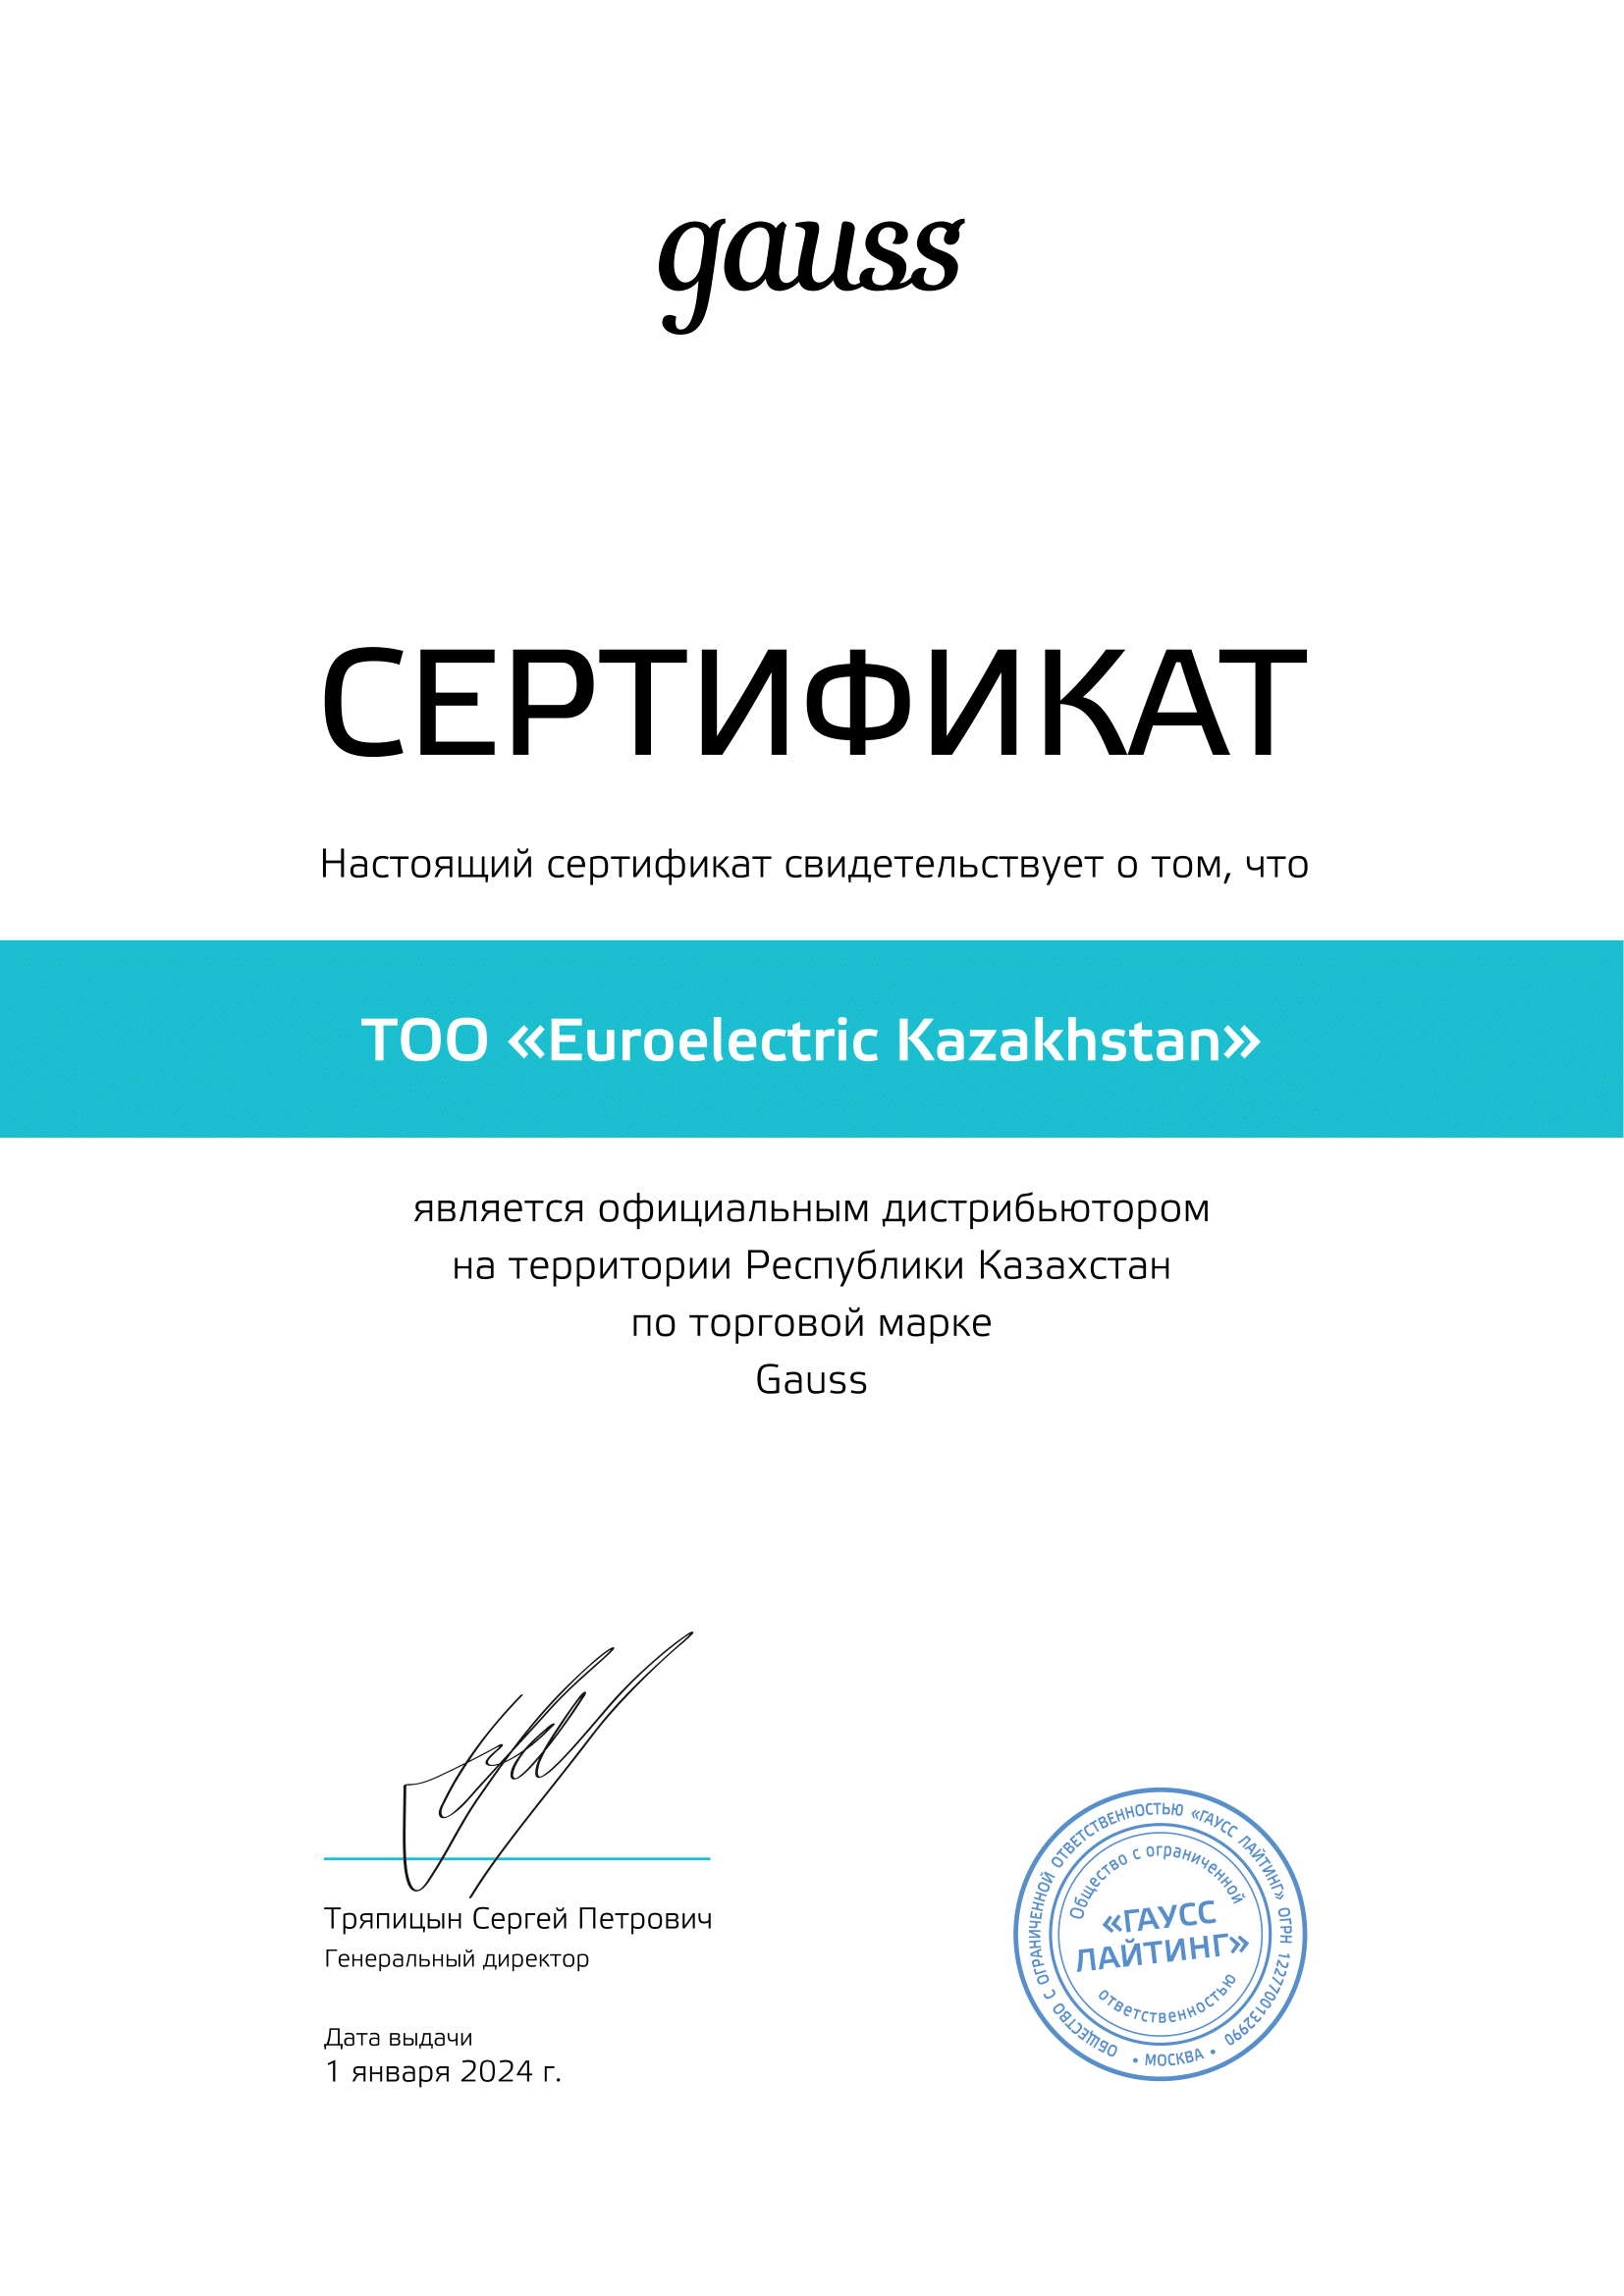 Сертификат Gauss